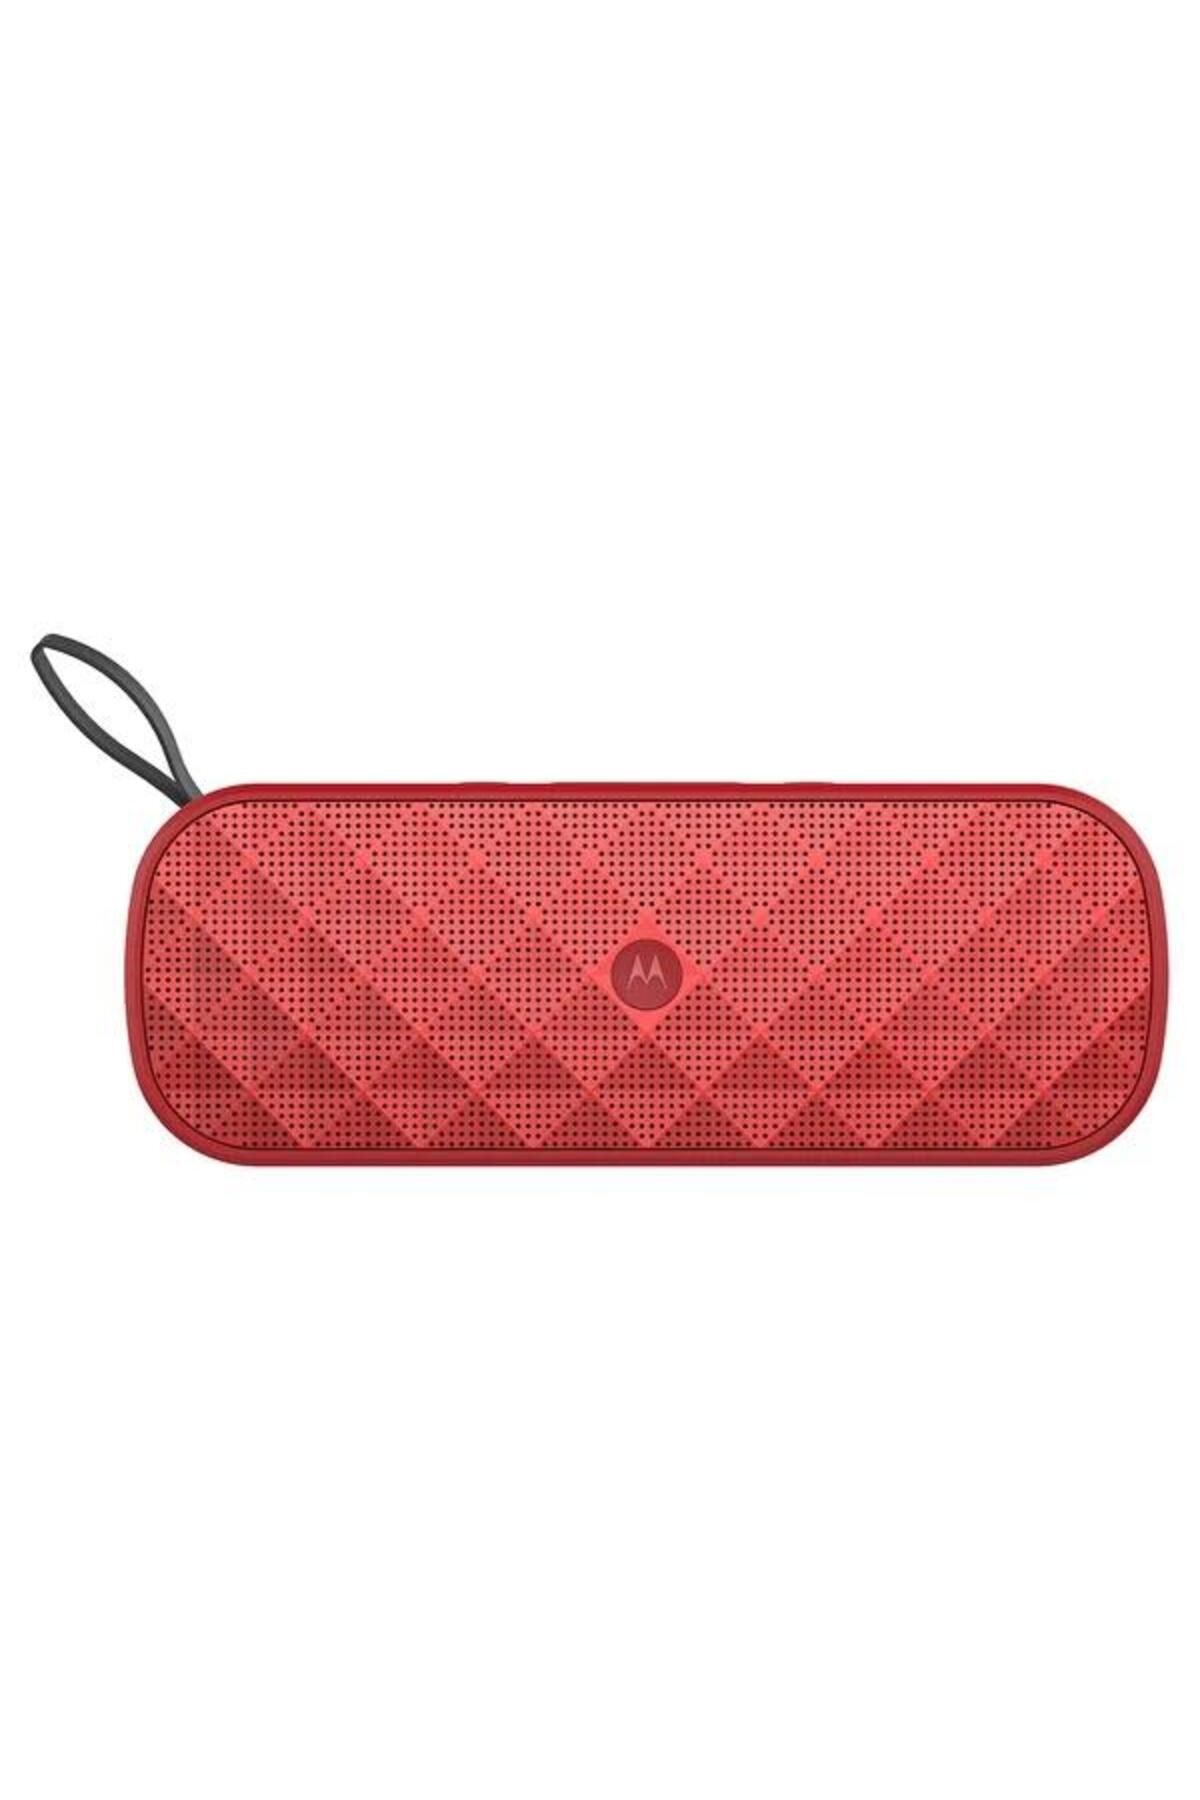 Motorola Sonic Play+ 275 FM Radyolu Bluetooth Hoparlör Kırmızı